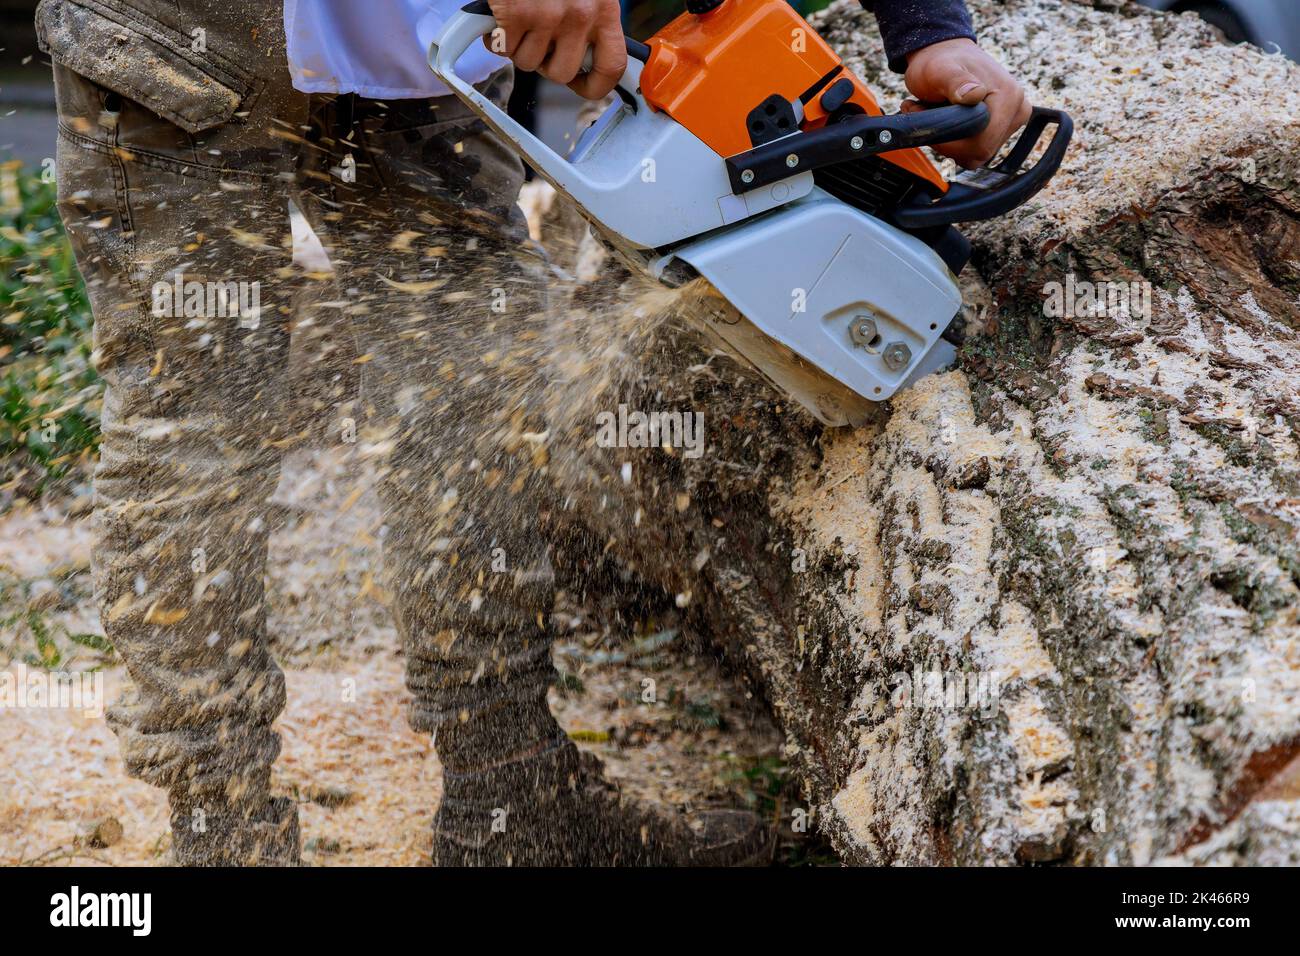 Arbeiter mit Kettensäge sägt Bäume, während ein Hurrikan durchweht, was auf den Asphalt fällt Stockfoto